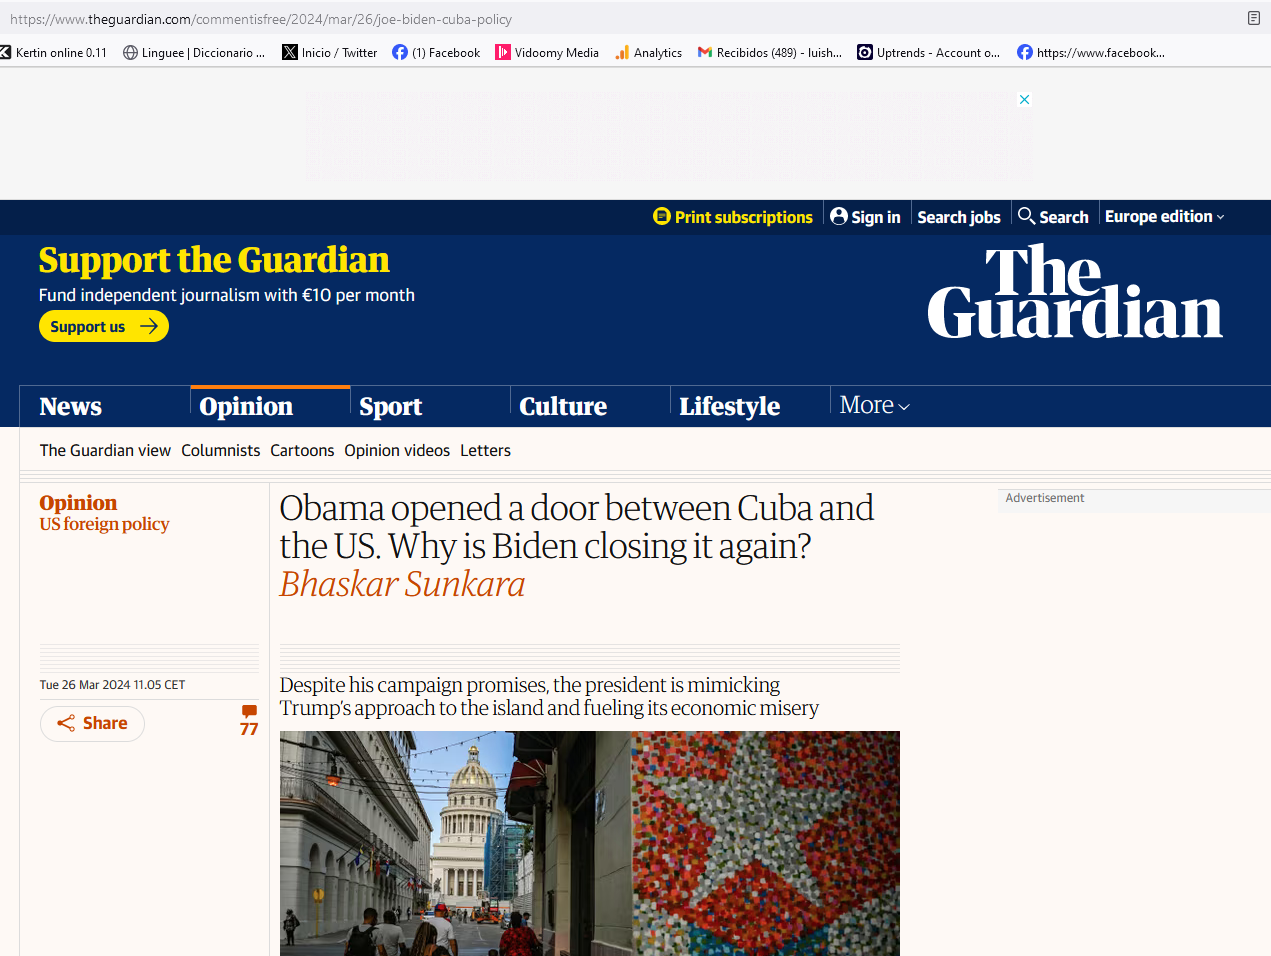 Le quotidien The Guardian reconnait la guerre économique des États-Unis contre Cuba